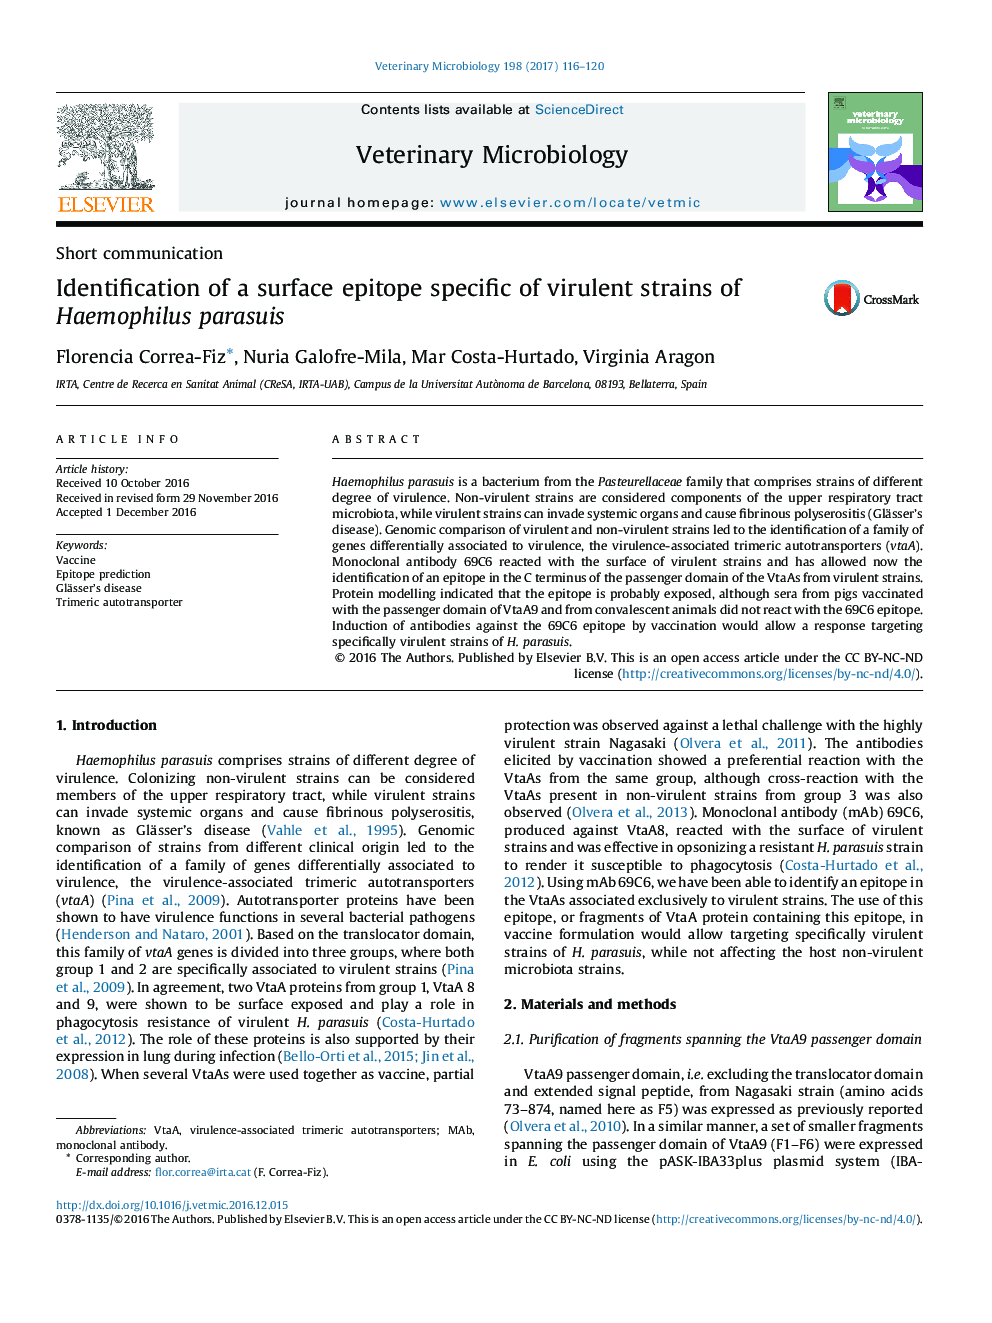 شناسایی اپیتوپ های سطحی اختصاصی سویه های ویروسی هاموفیلوس پاراسوئیس 